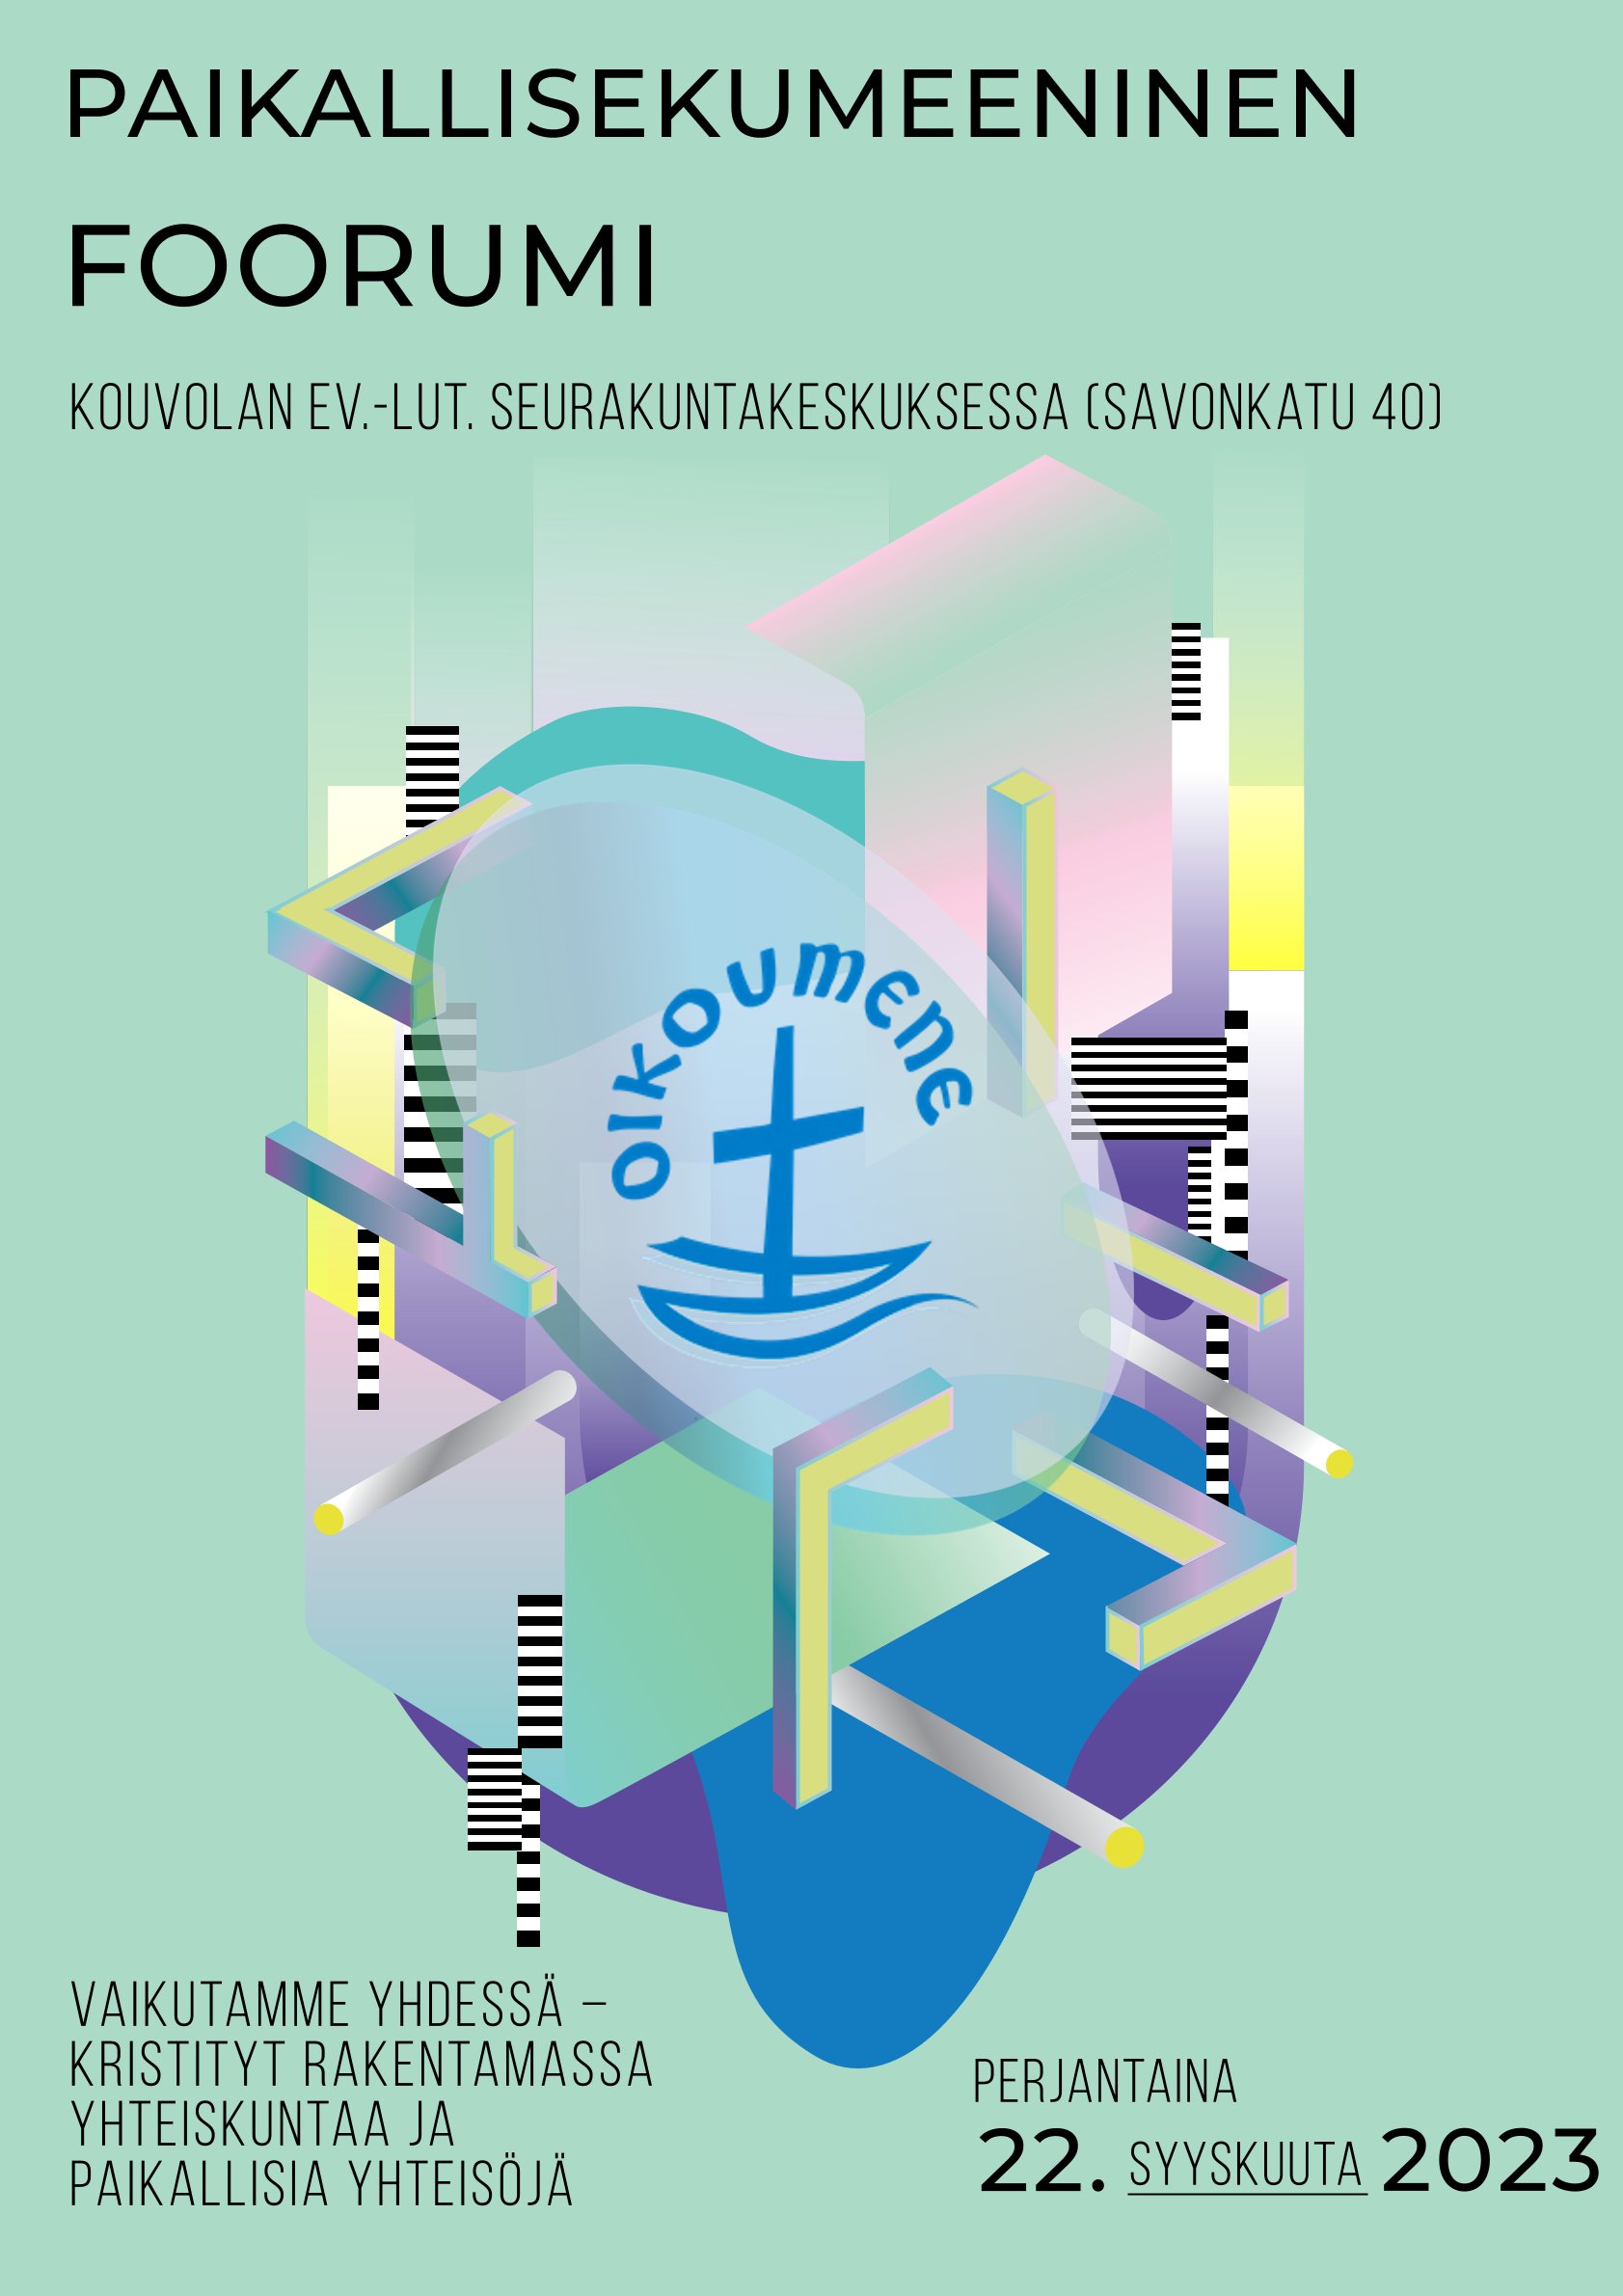 tapahtuman tiedot turkoosilla taustalla, keskellä ekumeenisen neuvoston logo, jossa kirkkolaiva ja purjeena risti